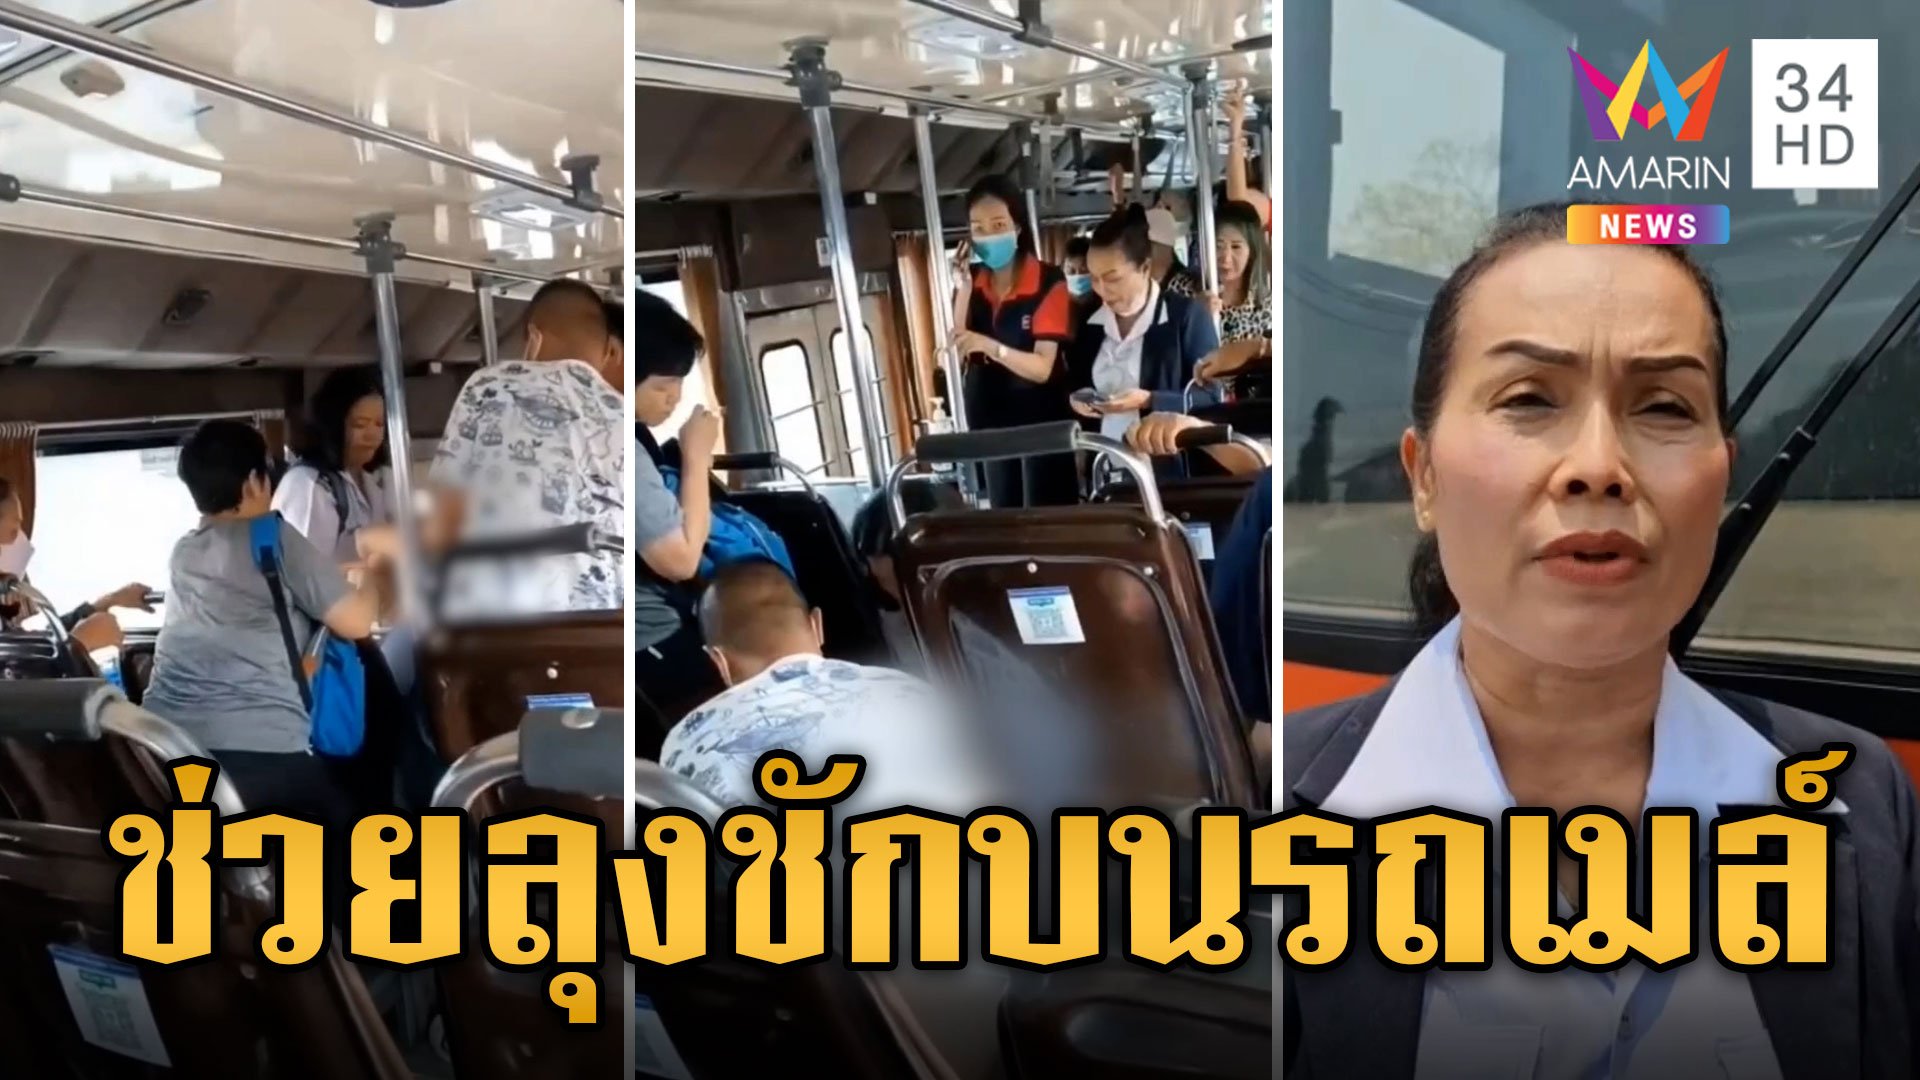 ระทึก! ลุงป่วยชักบนรถเมล์ ผู้โดยสารร่วมใจช่วยชีวิต | ข่าวเที่ยงอมรินทร์ | 13 เม.ย. 67 | AMARIN TVHD34